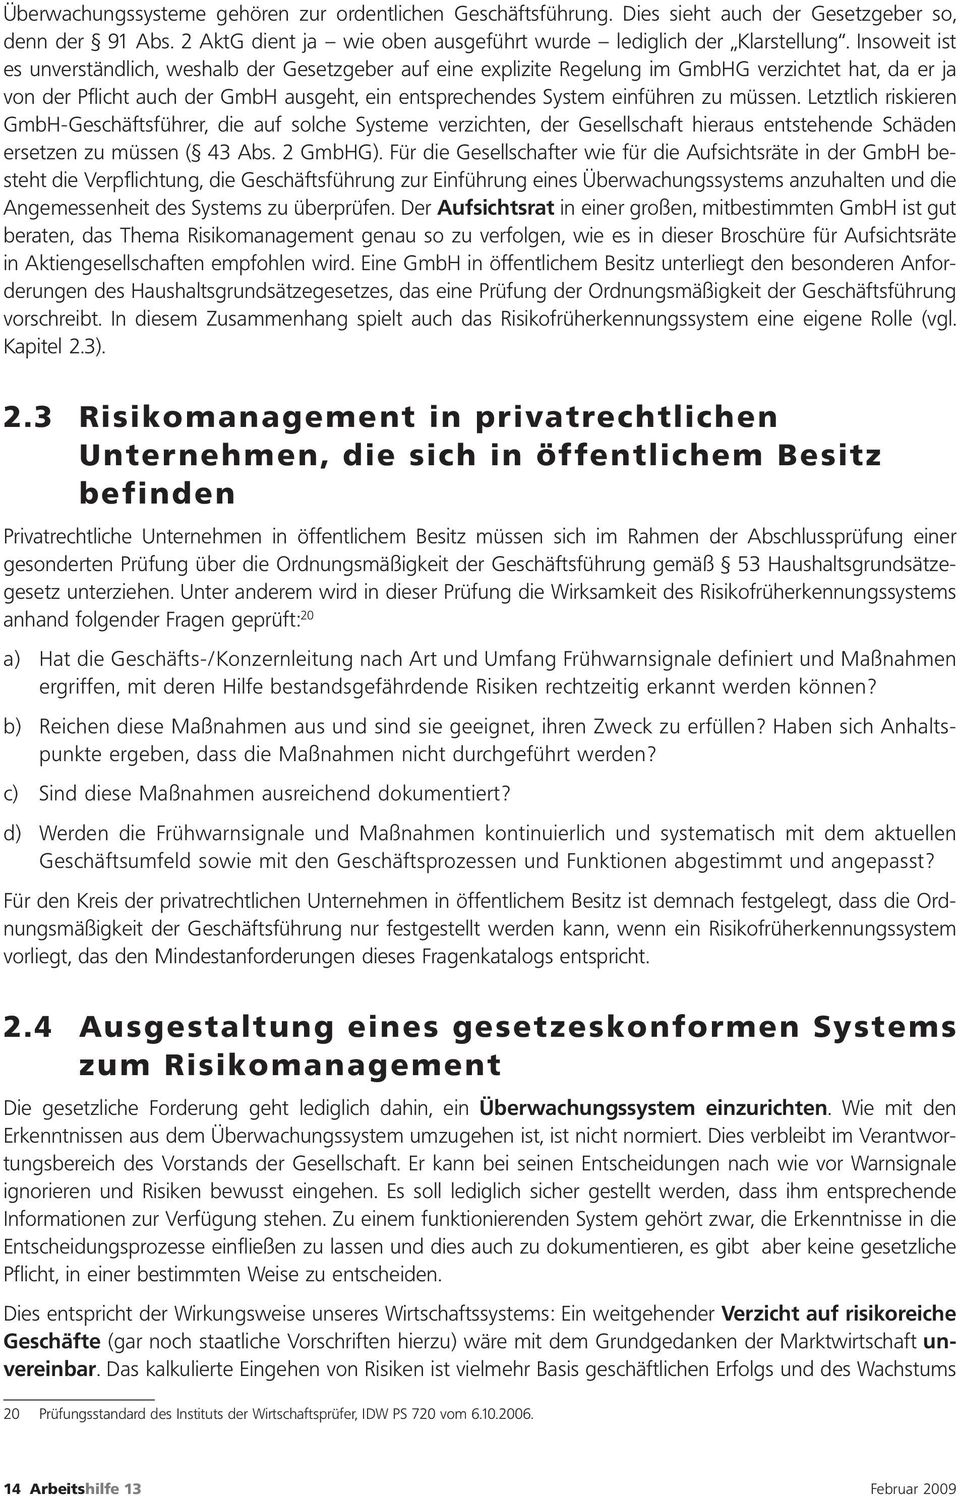 müssen. Letztlich riskieren GmbH-Geschäftsführer, die auf solche Systeme verzichten, der Gesellschaft hieraus entstehende Schäden ersetzen zu müssen ( 43 Abs. 2 GmbHG).